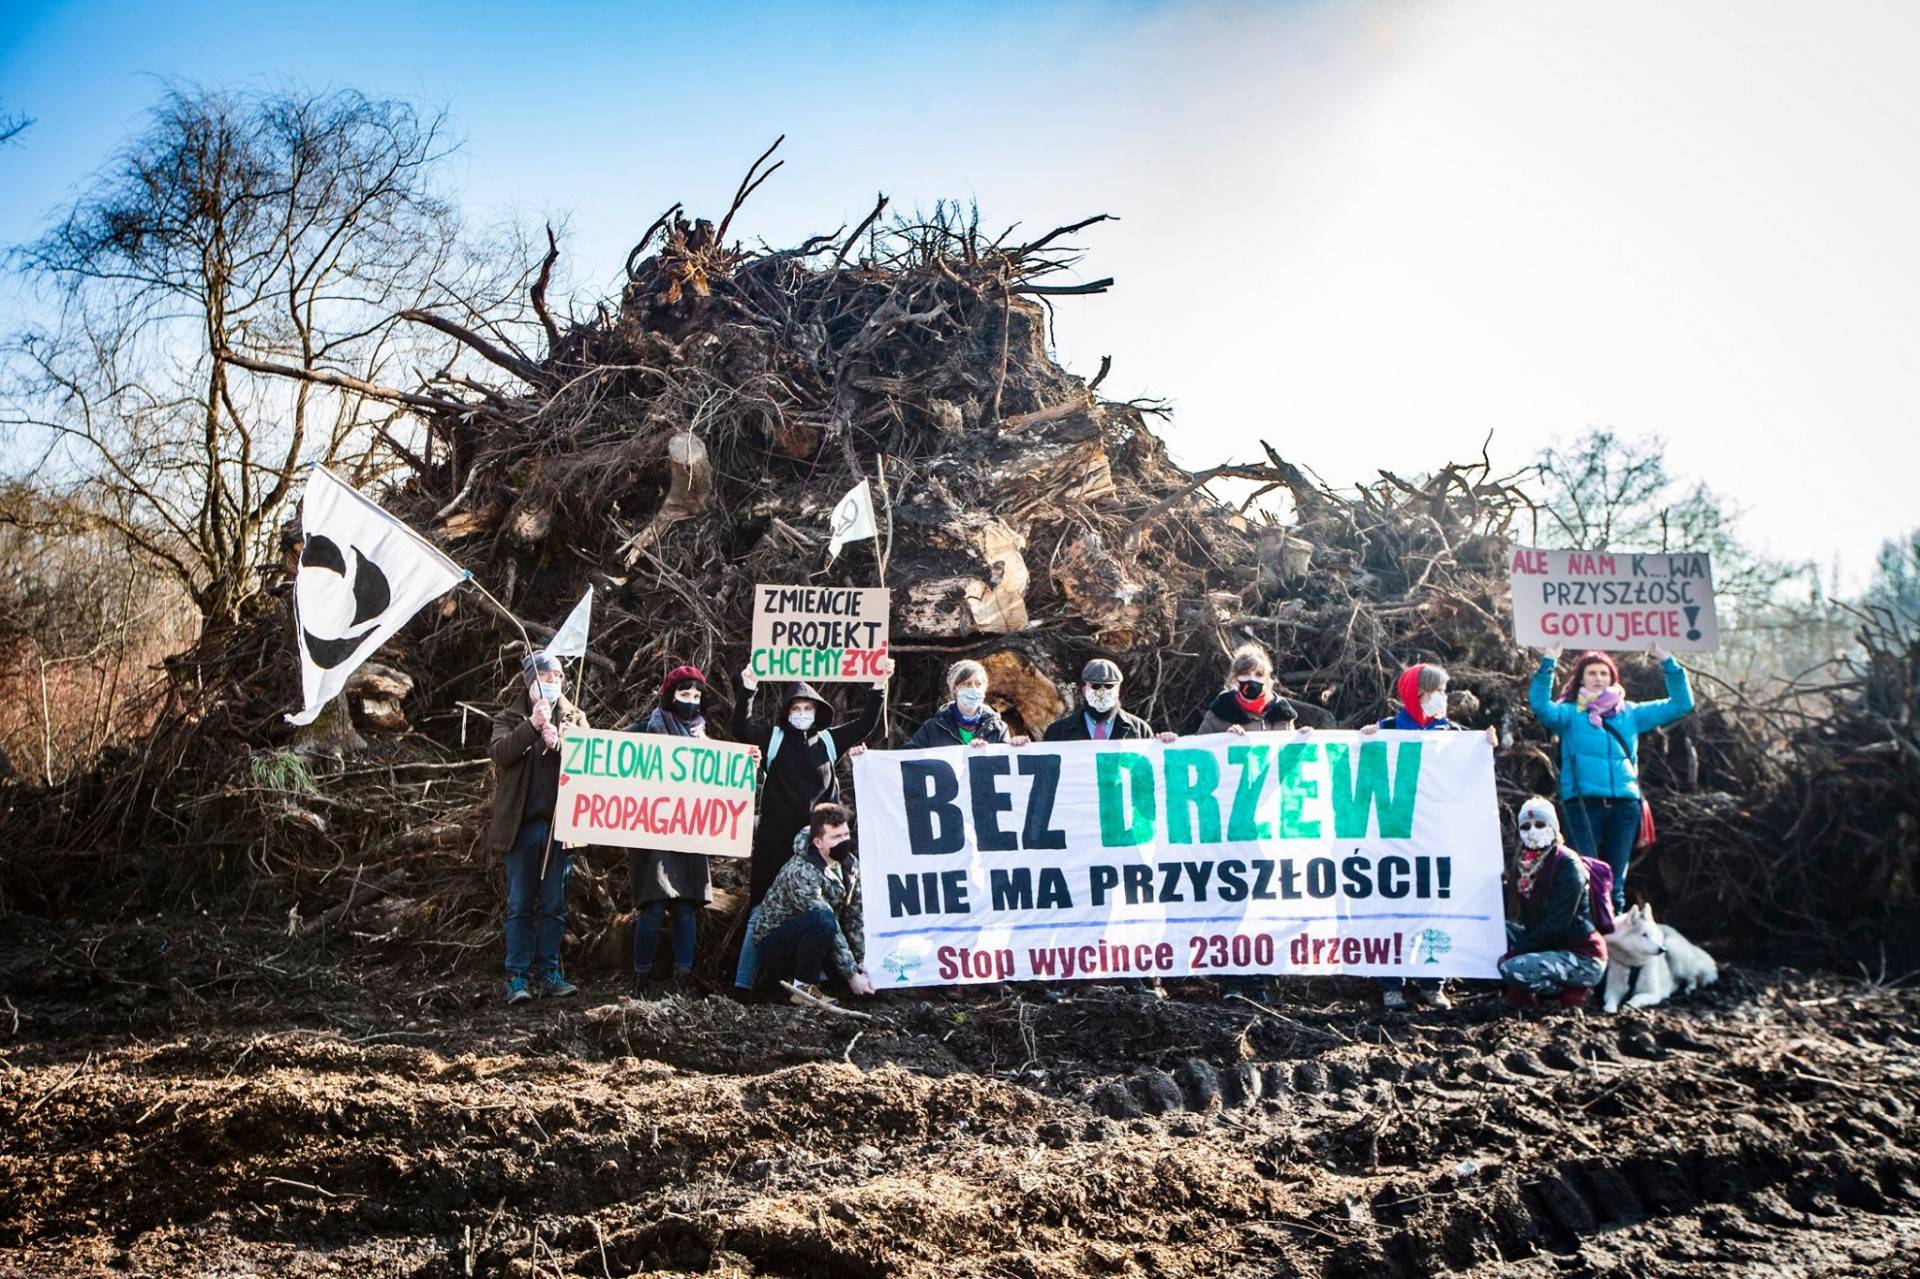 Aktywiści alarmują: "rozpoczęła się "rzeź  na 2300 drzewach"